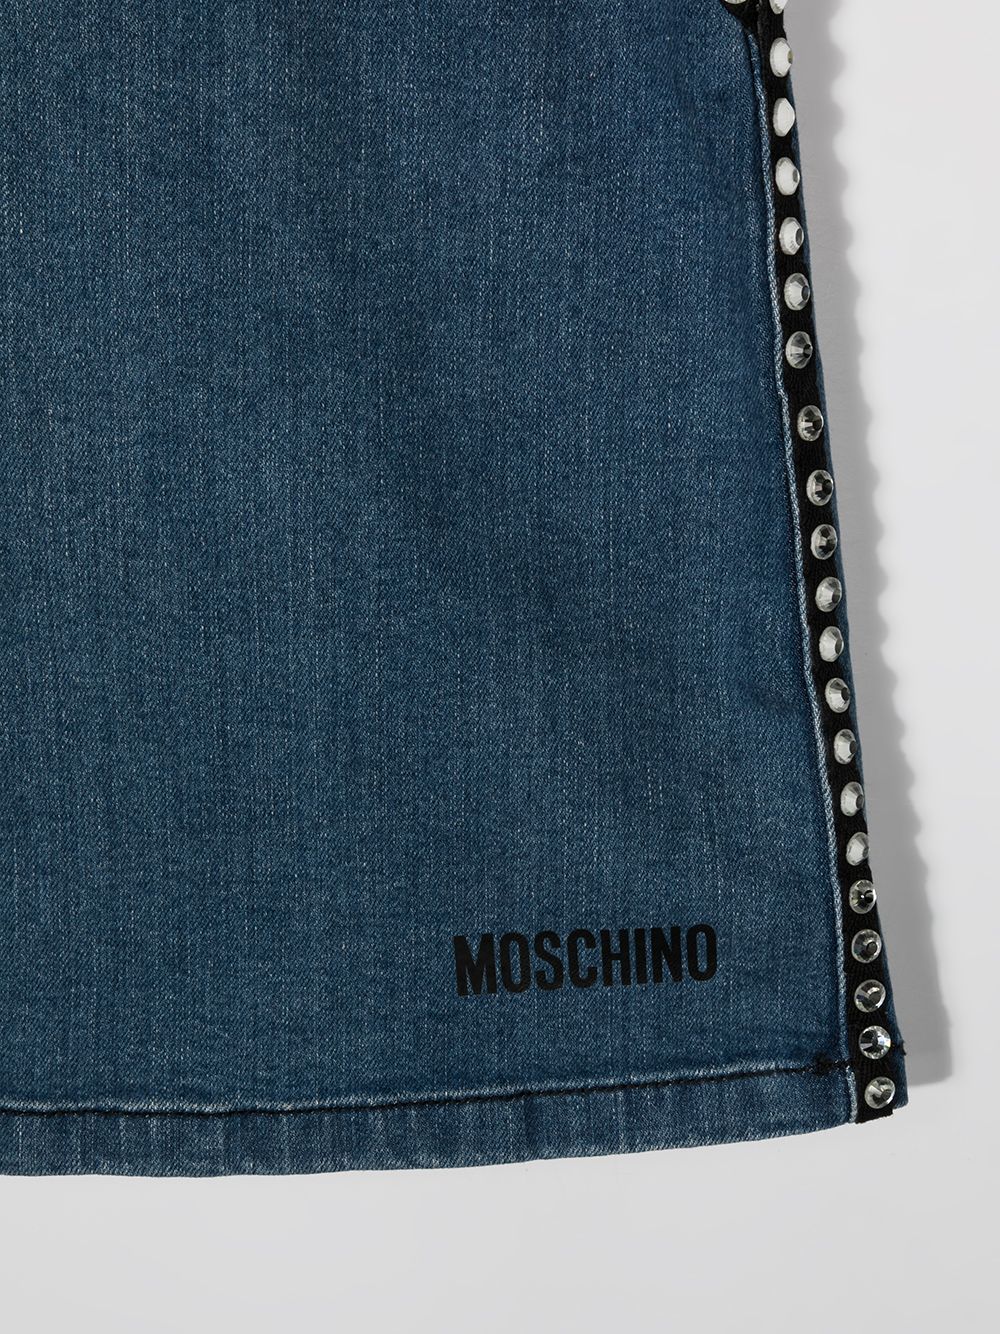 фото Moschino kids джинсовая юбка со стразами